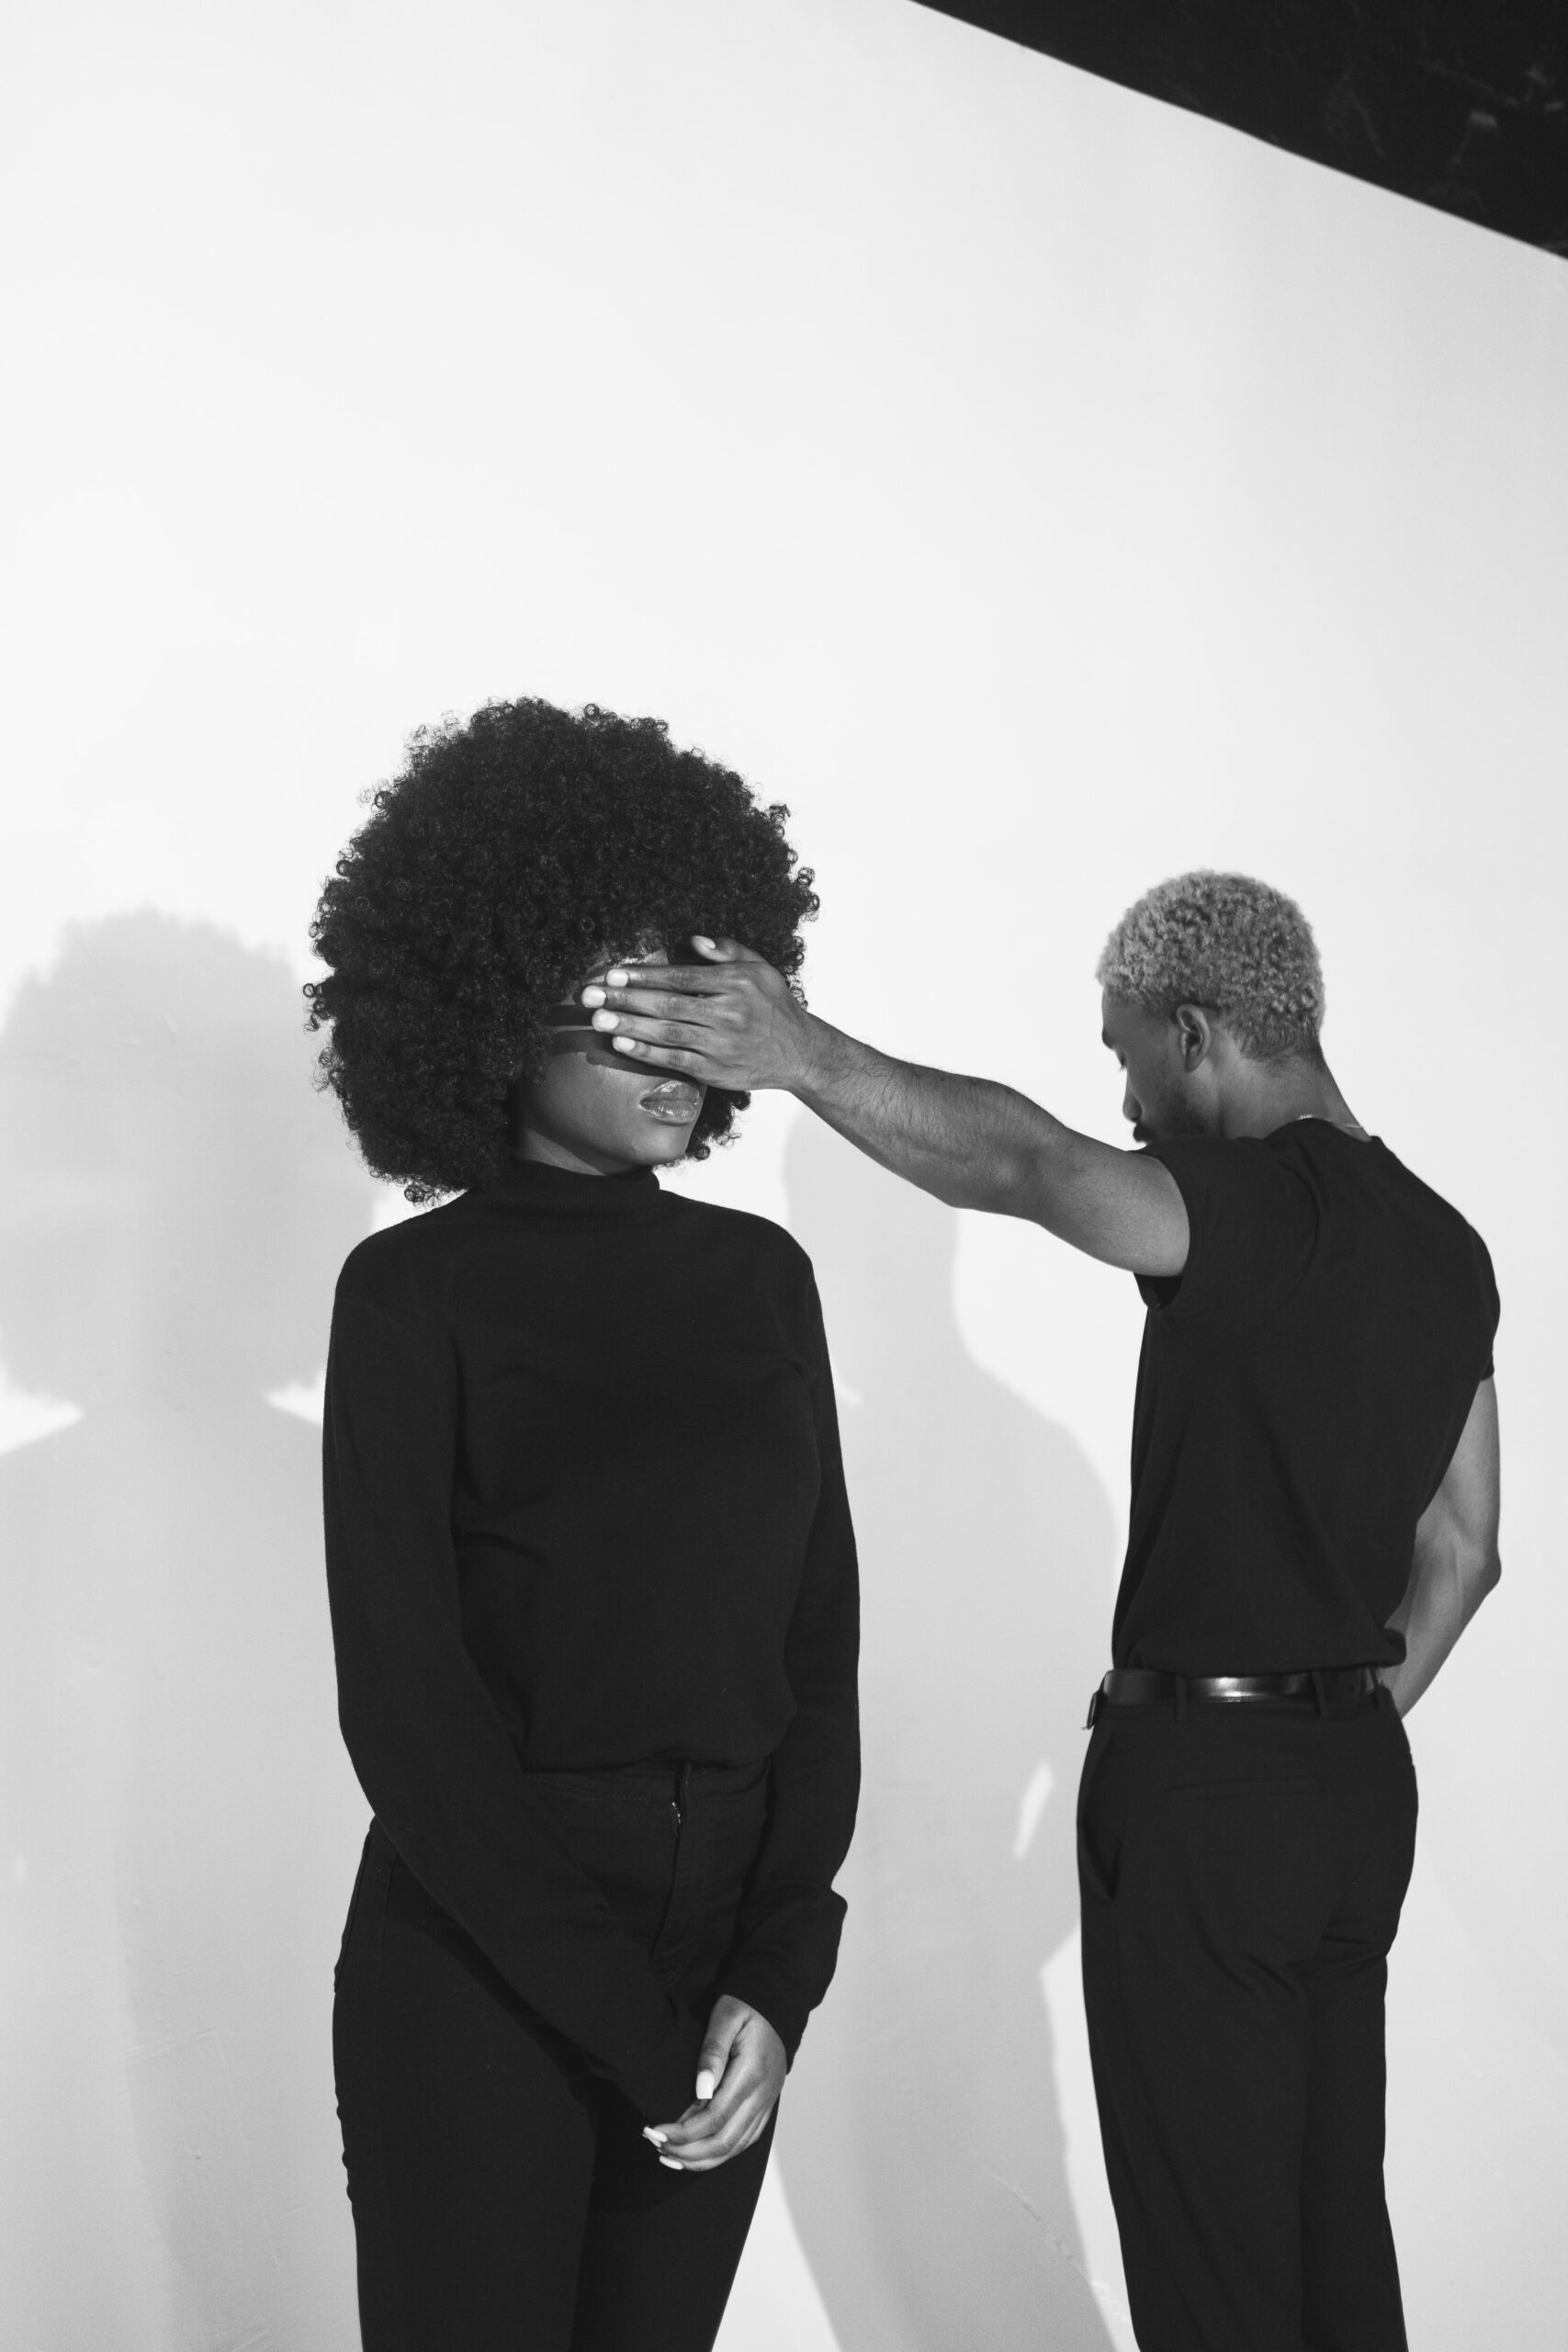 Kuvailutulkkaus pähkinänkuoressa artikkelin mustavalkoinen kuva, jossa mies ja nainen seisovat valkoista seinää vasten ja mies pitää kättään afrotukkaisen naisen silmillä.